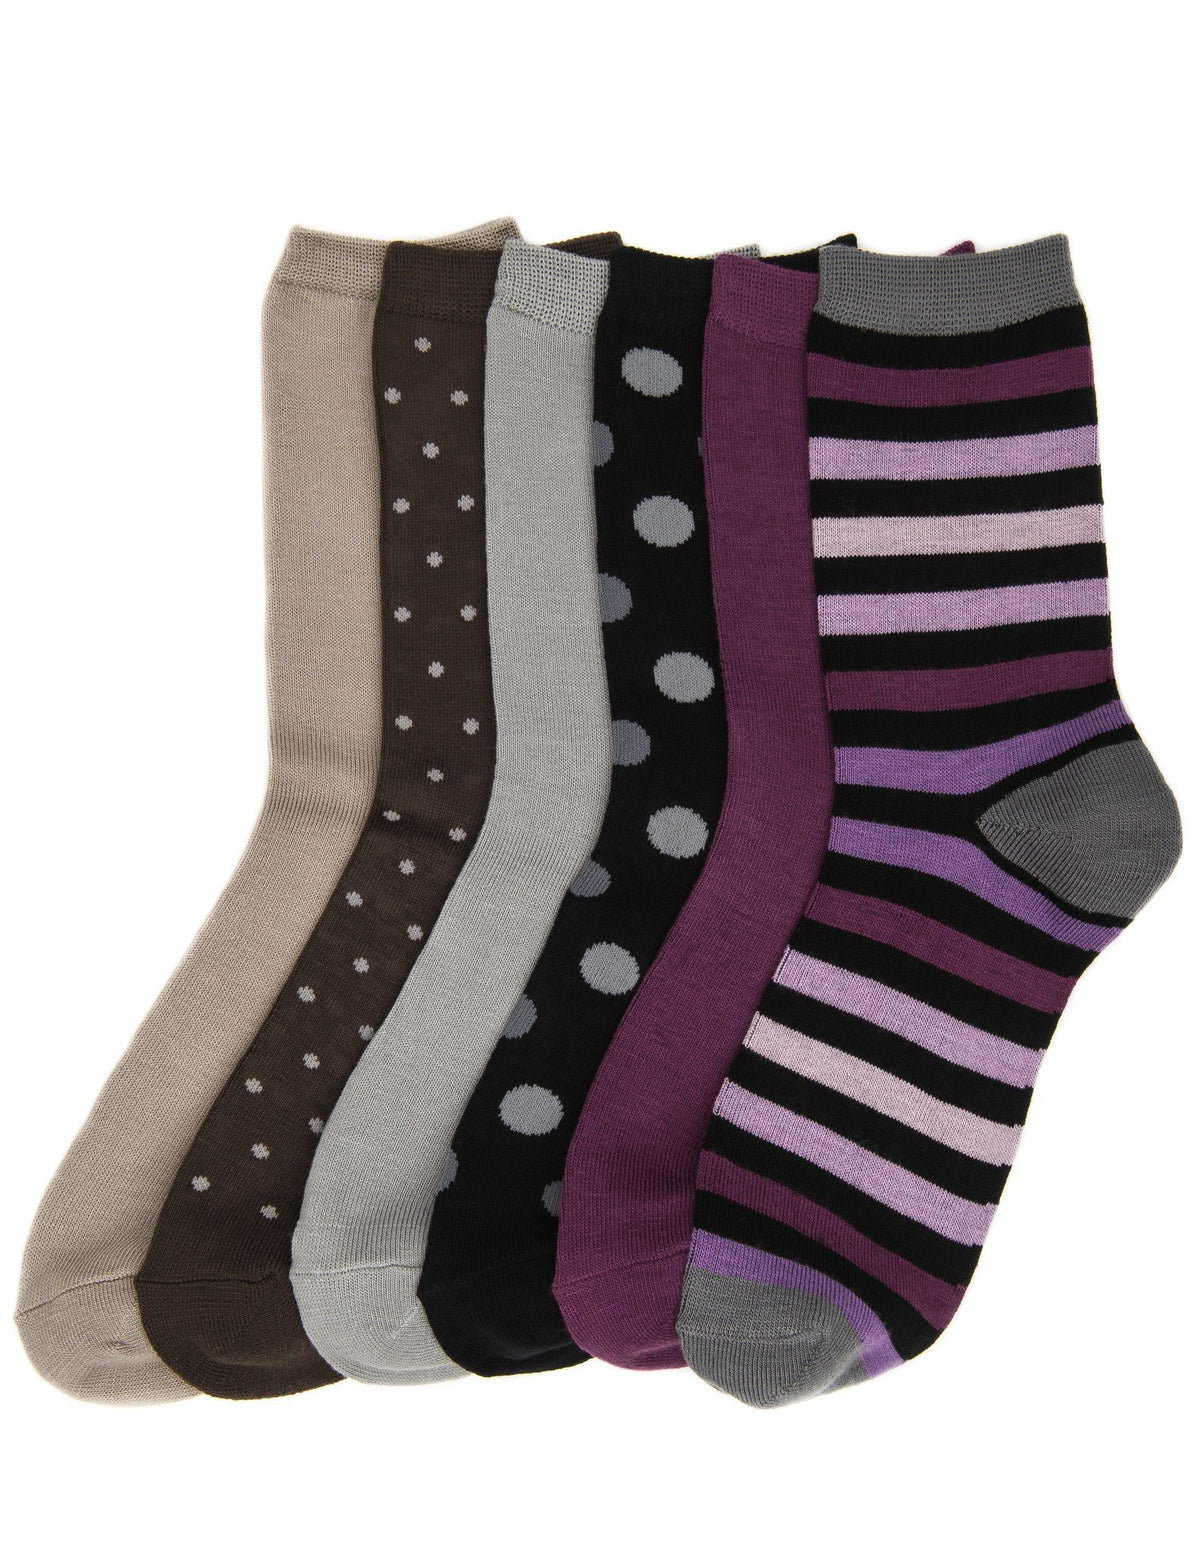 Women's Soft Premium Crew Socks - 6 Pairs - Set 5